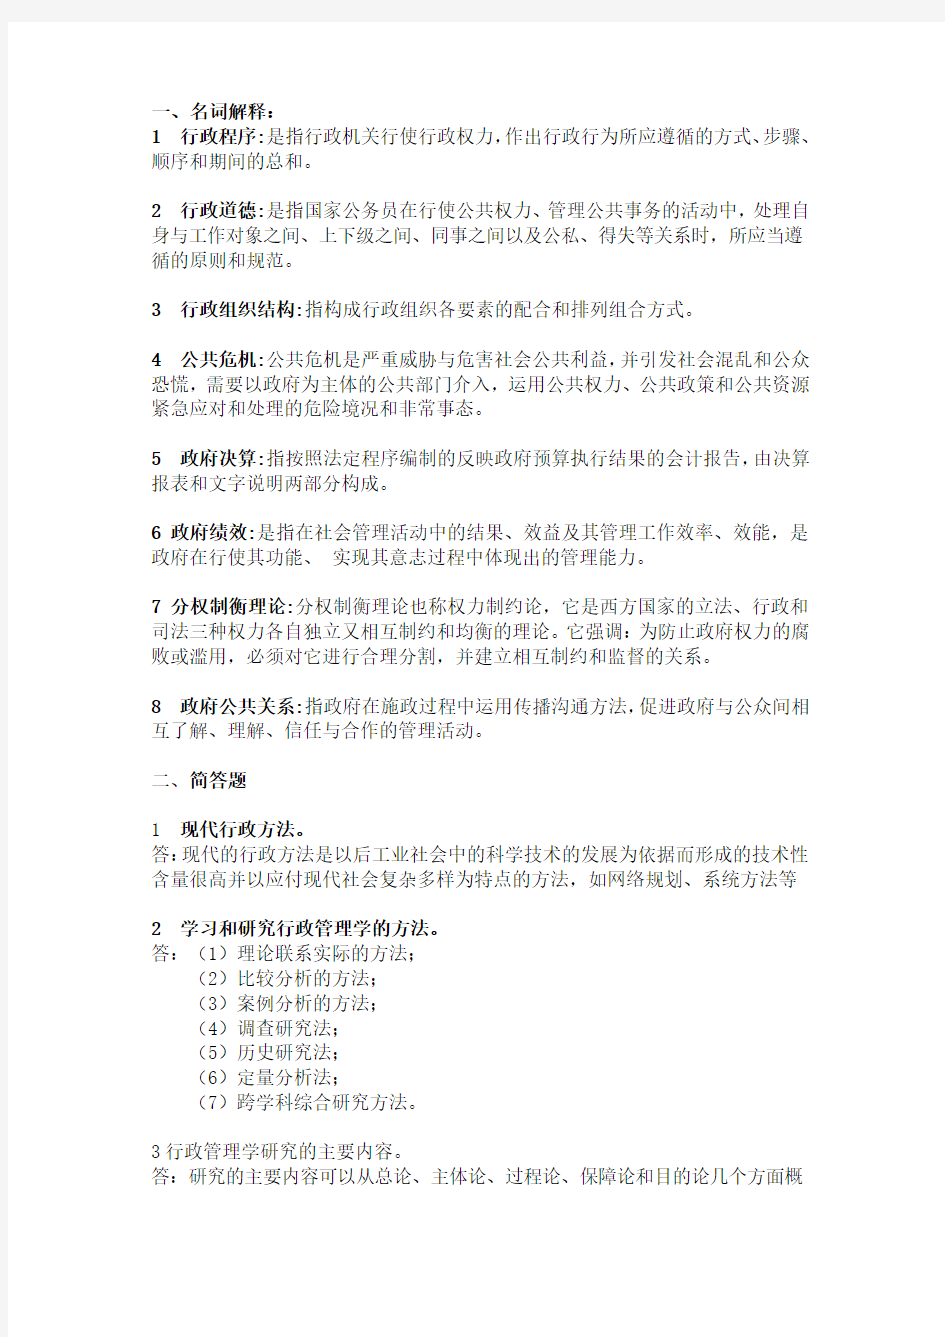 华南理工网络教育《行政管理学》平时作业2